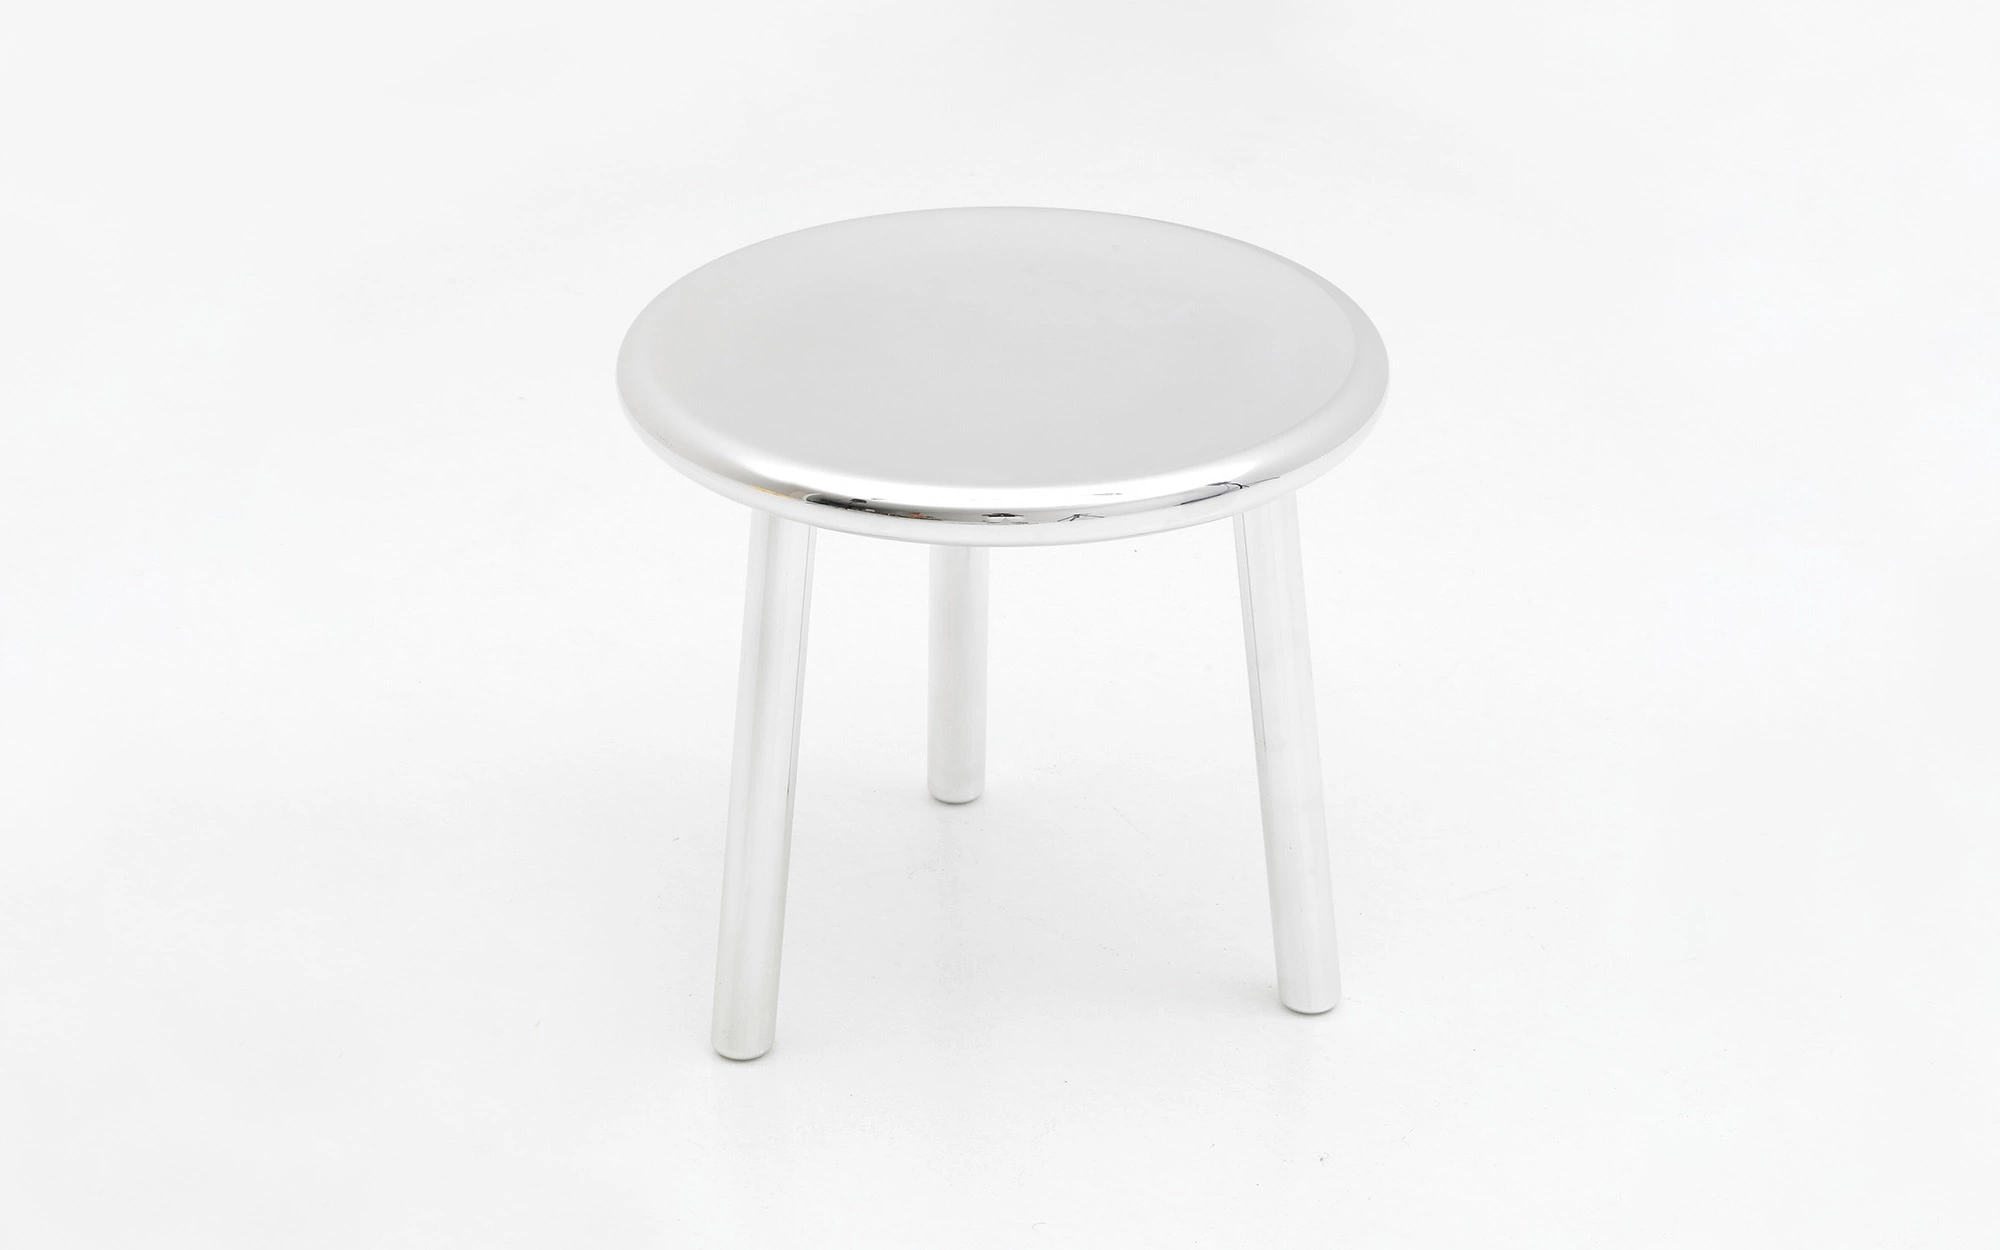 3-legged stool - Jasper Morrison - Storage - Galerie kreo